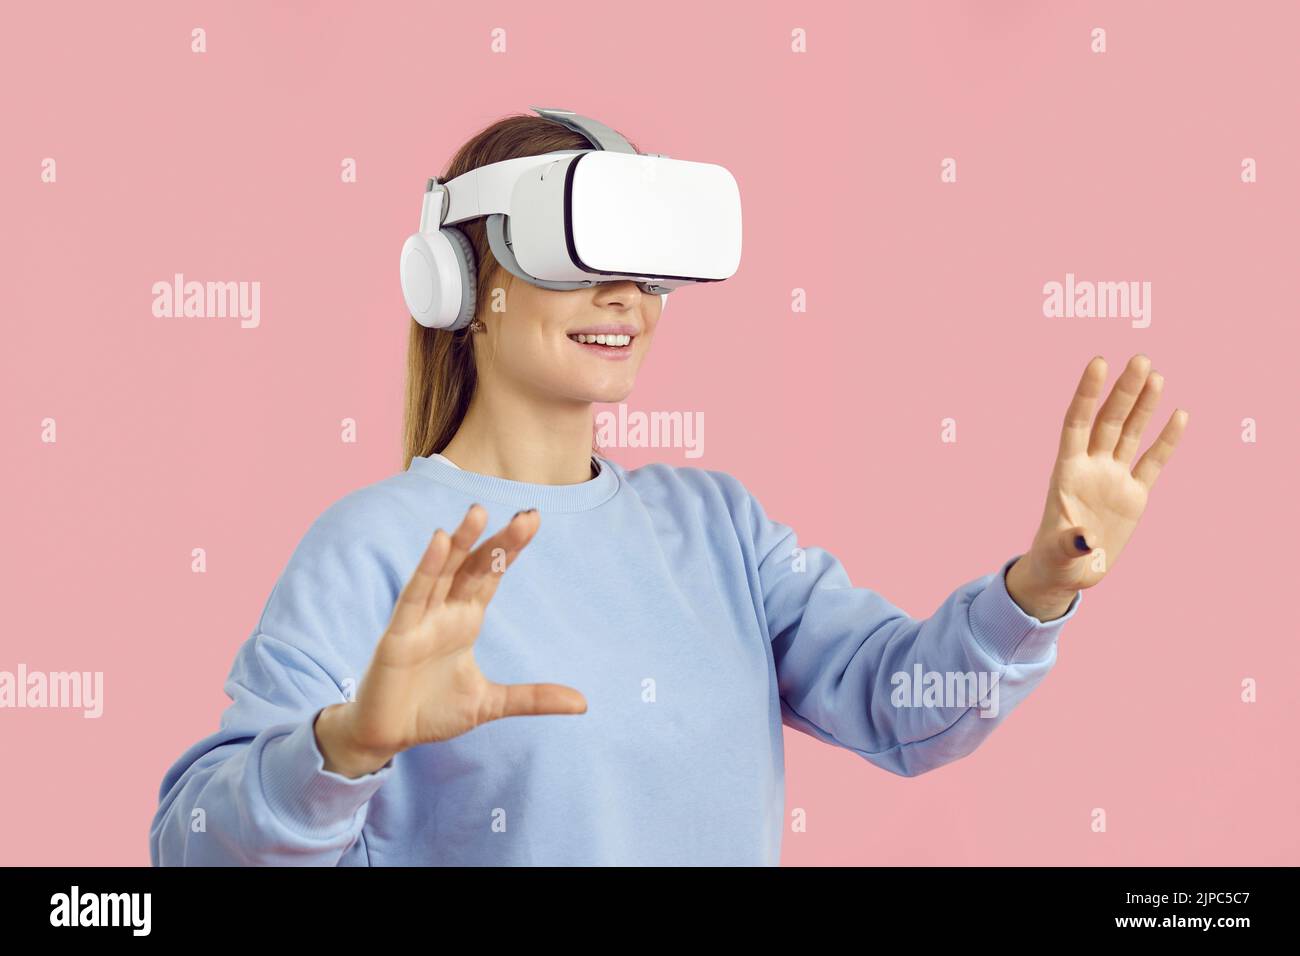 Une jeune femme souriante et stupéfait de toucher l'air pendant l'expérience VR, isolée sur fond rose. Banque D'Images